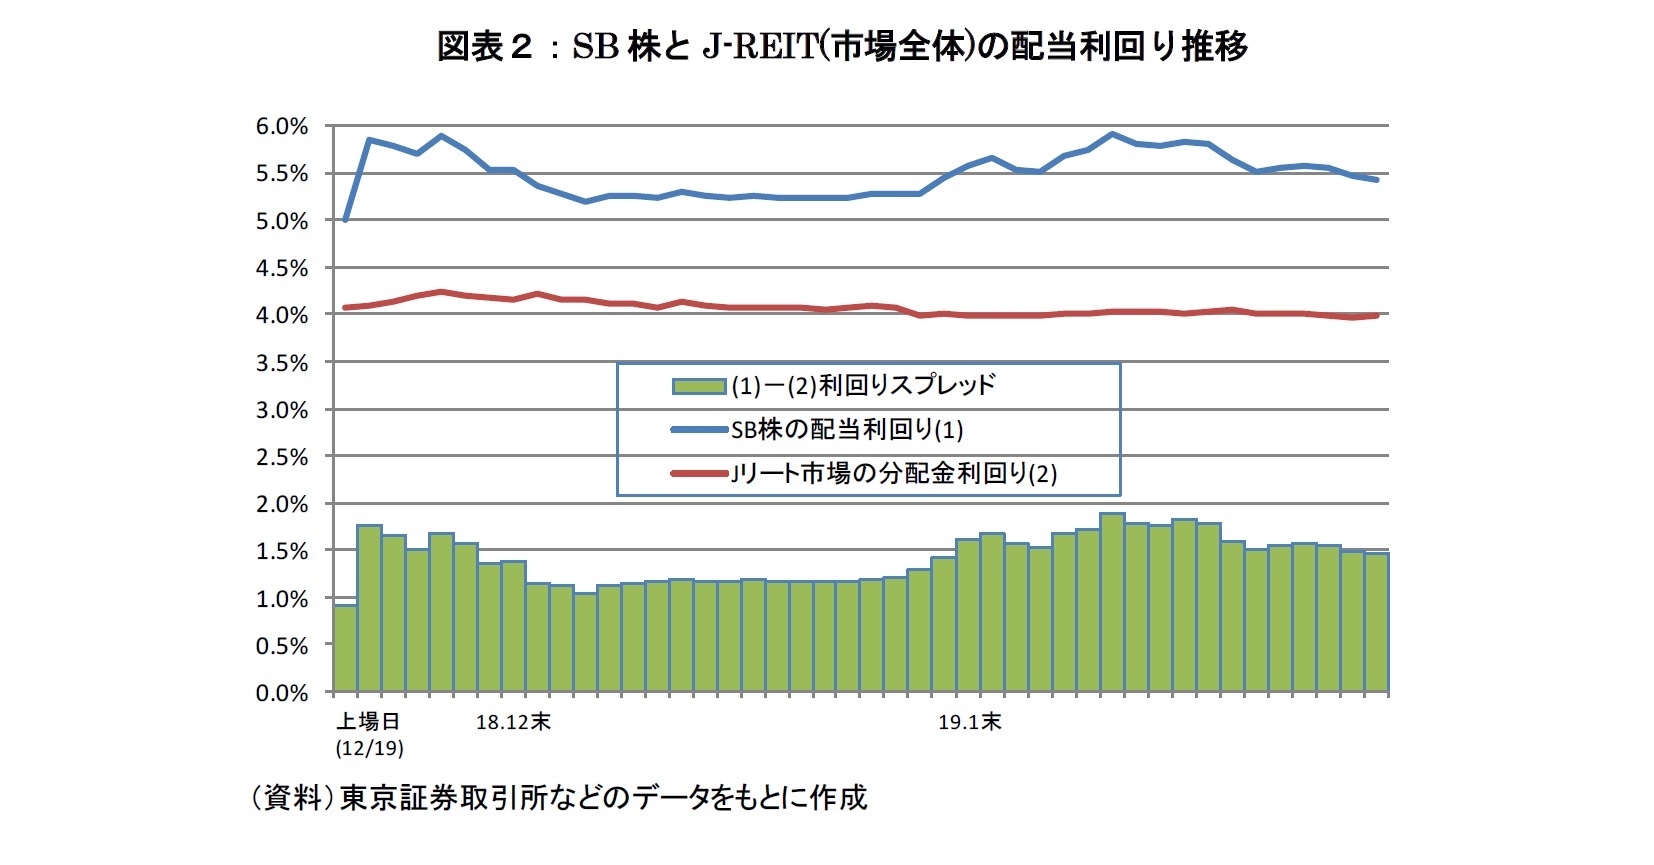 図表２：SB株とJ-REIT(市場全体)の配当利回り推移